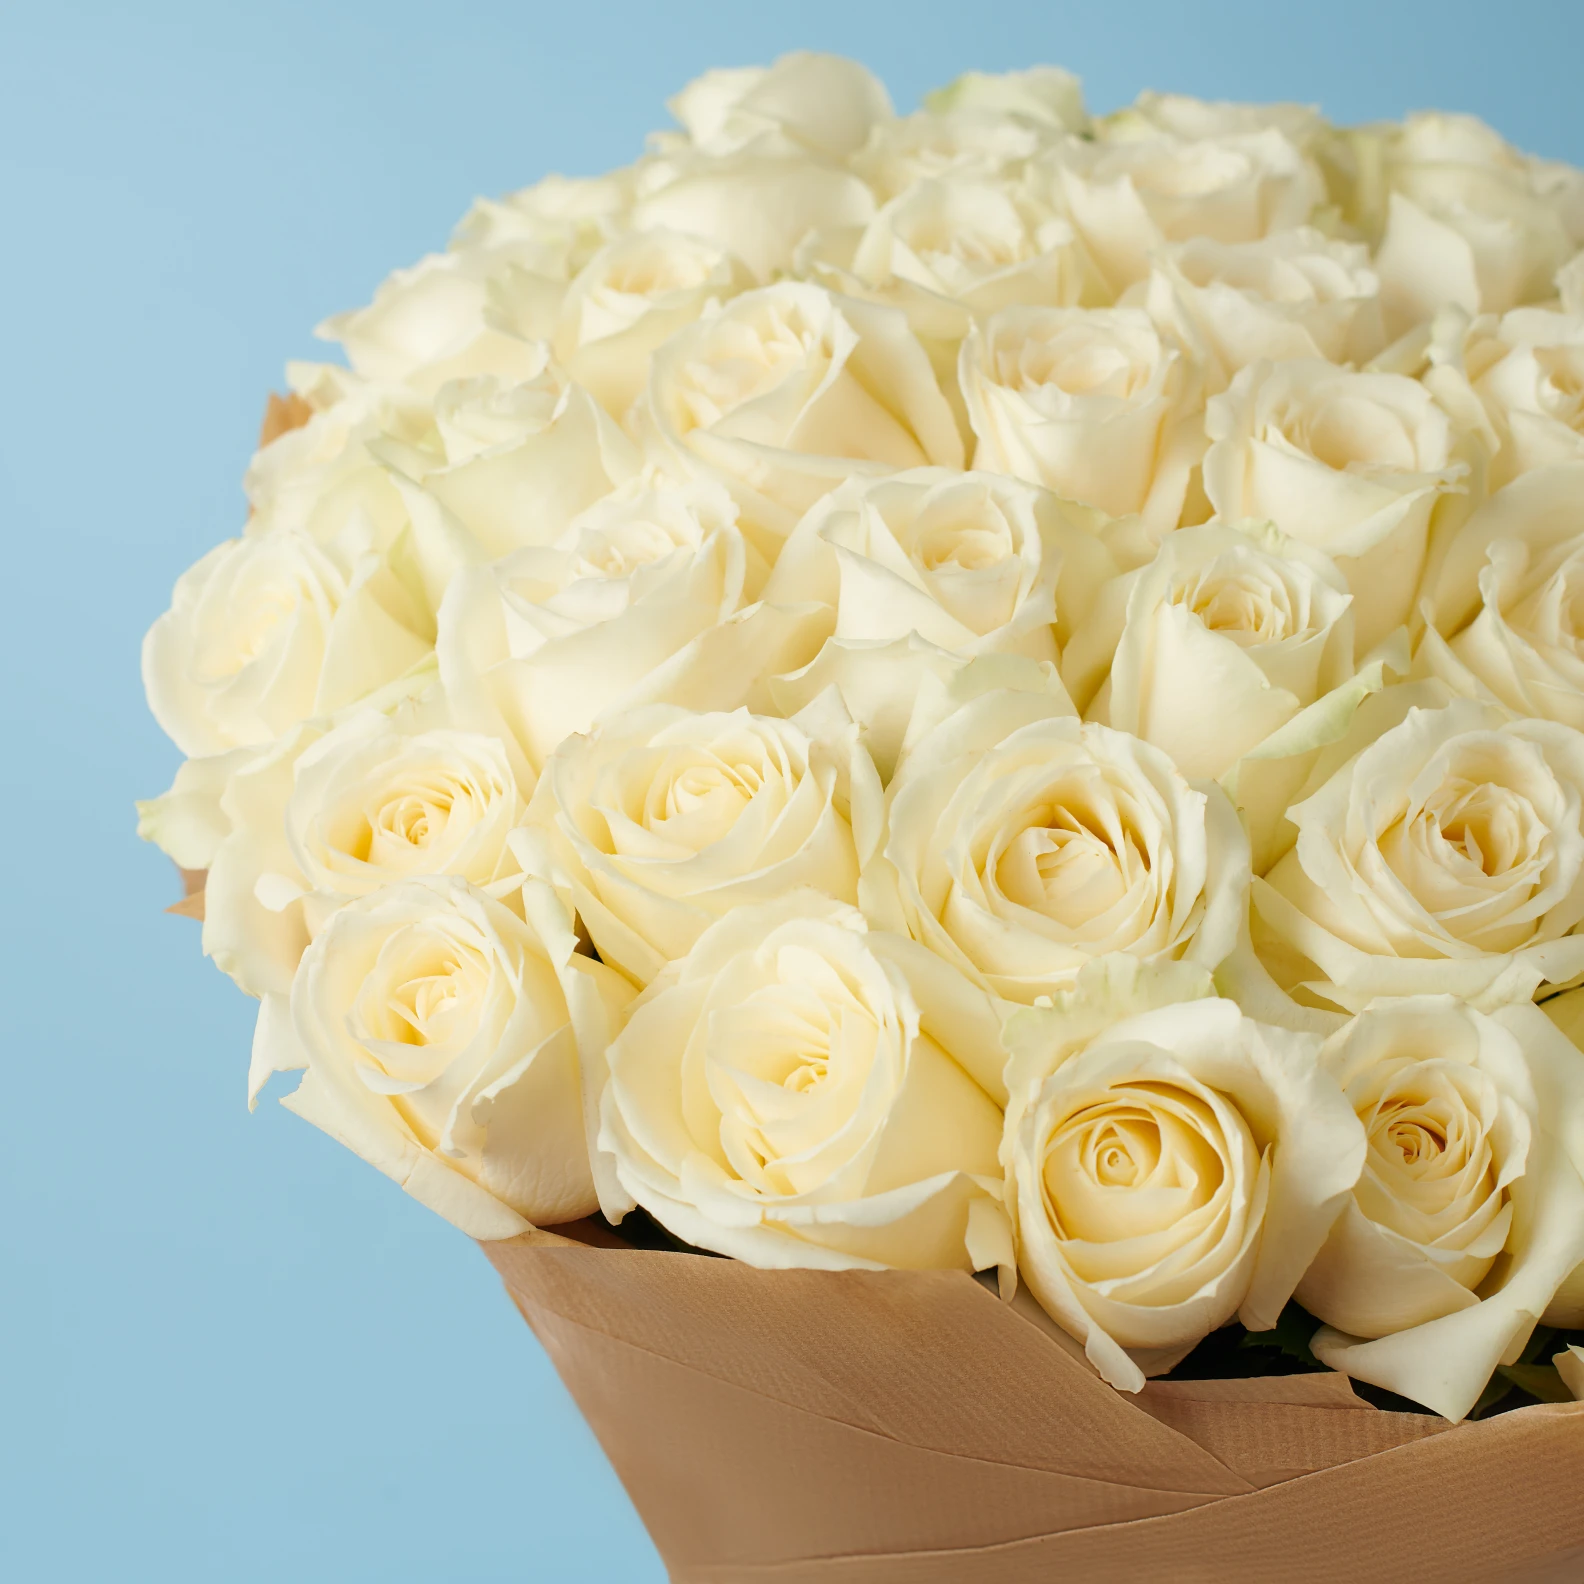 50 Premium White Roses - image №3